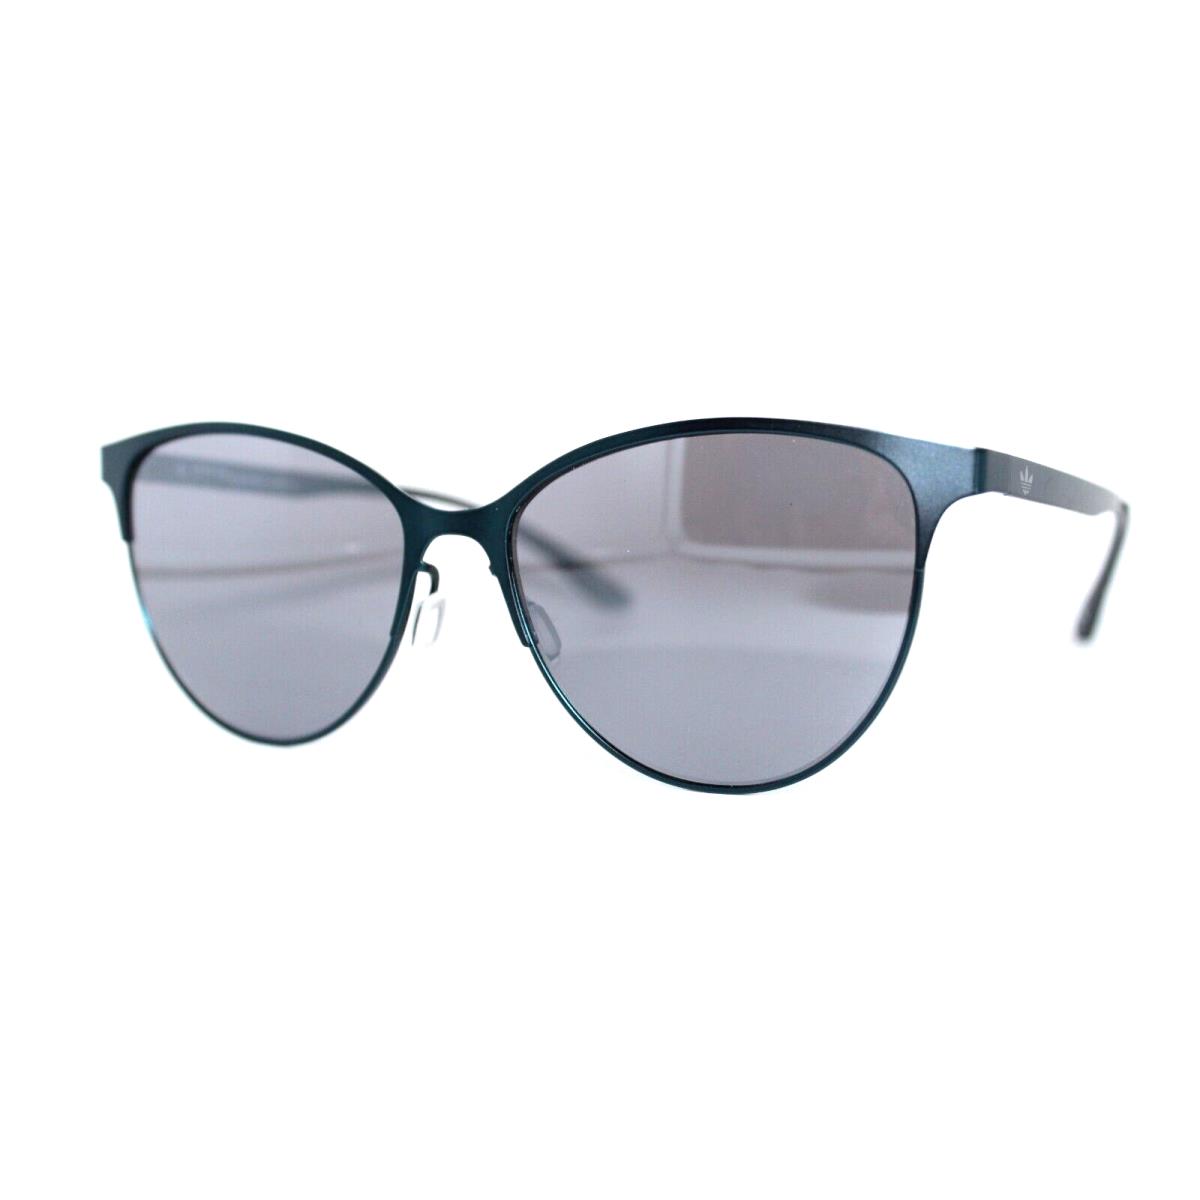 Adidas AOM002 026 000 Teal Sunglasses Mirror Frames 55MM W/pouch